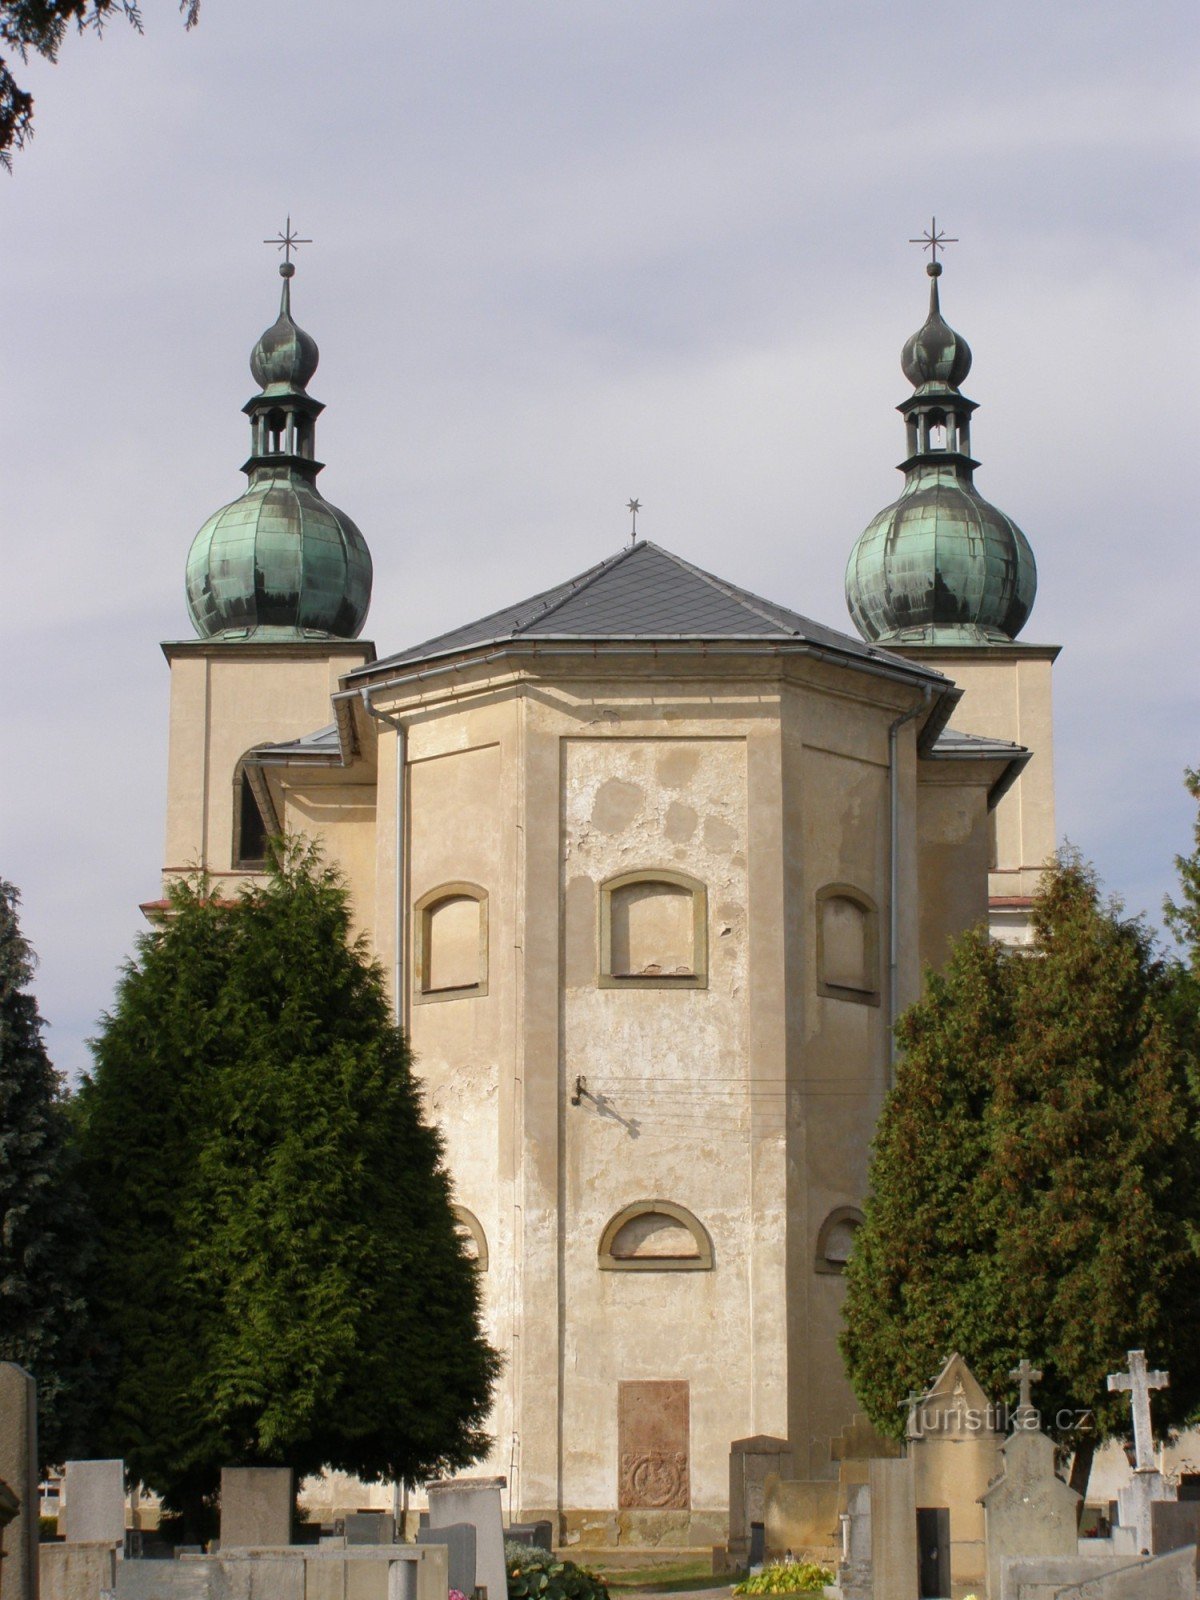 Kostelec nad Orlicí - kościół św. Anna